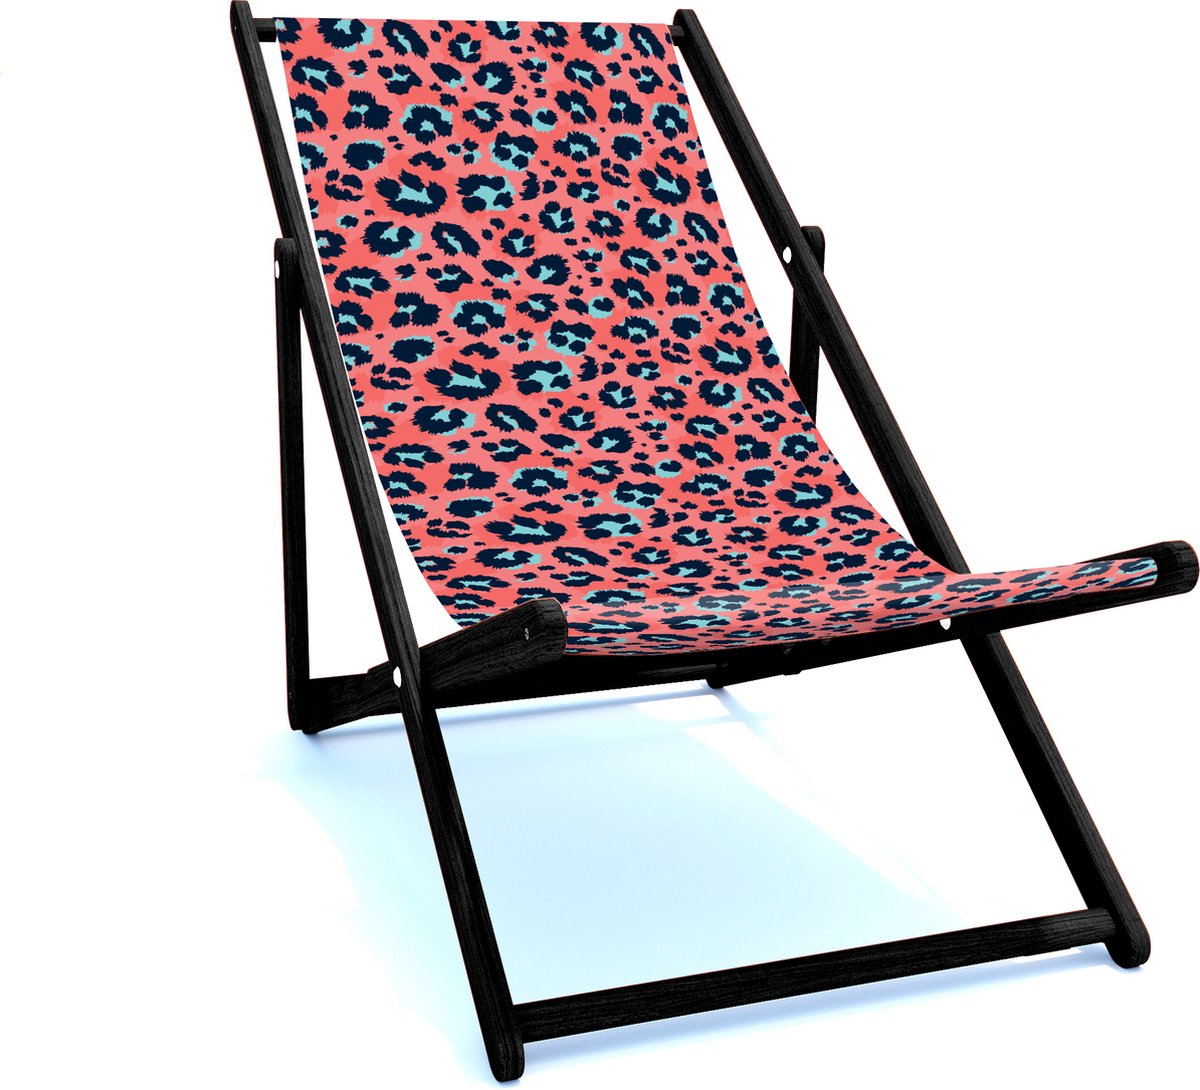 Holtaz Strandstoel Hout Inklapbaar Comfortabele Zonnebed Ligbed met verstelbare Lighoogte met stoffen Patterns zwart houten frame